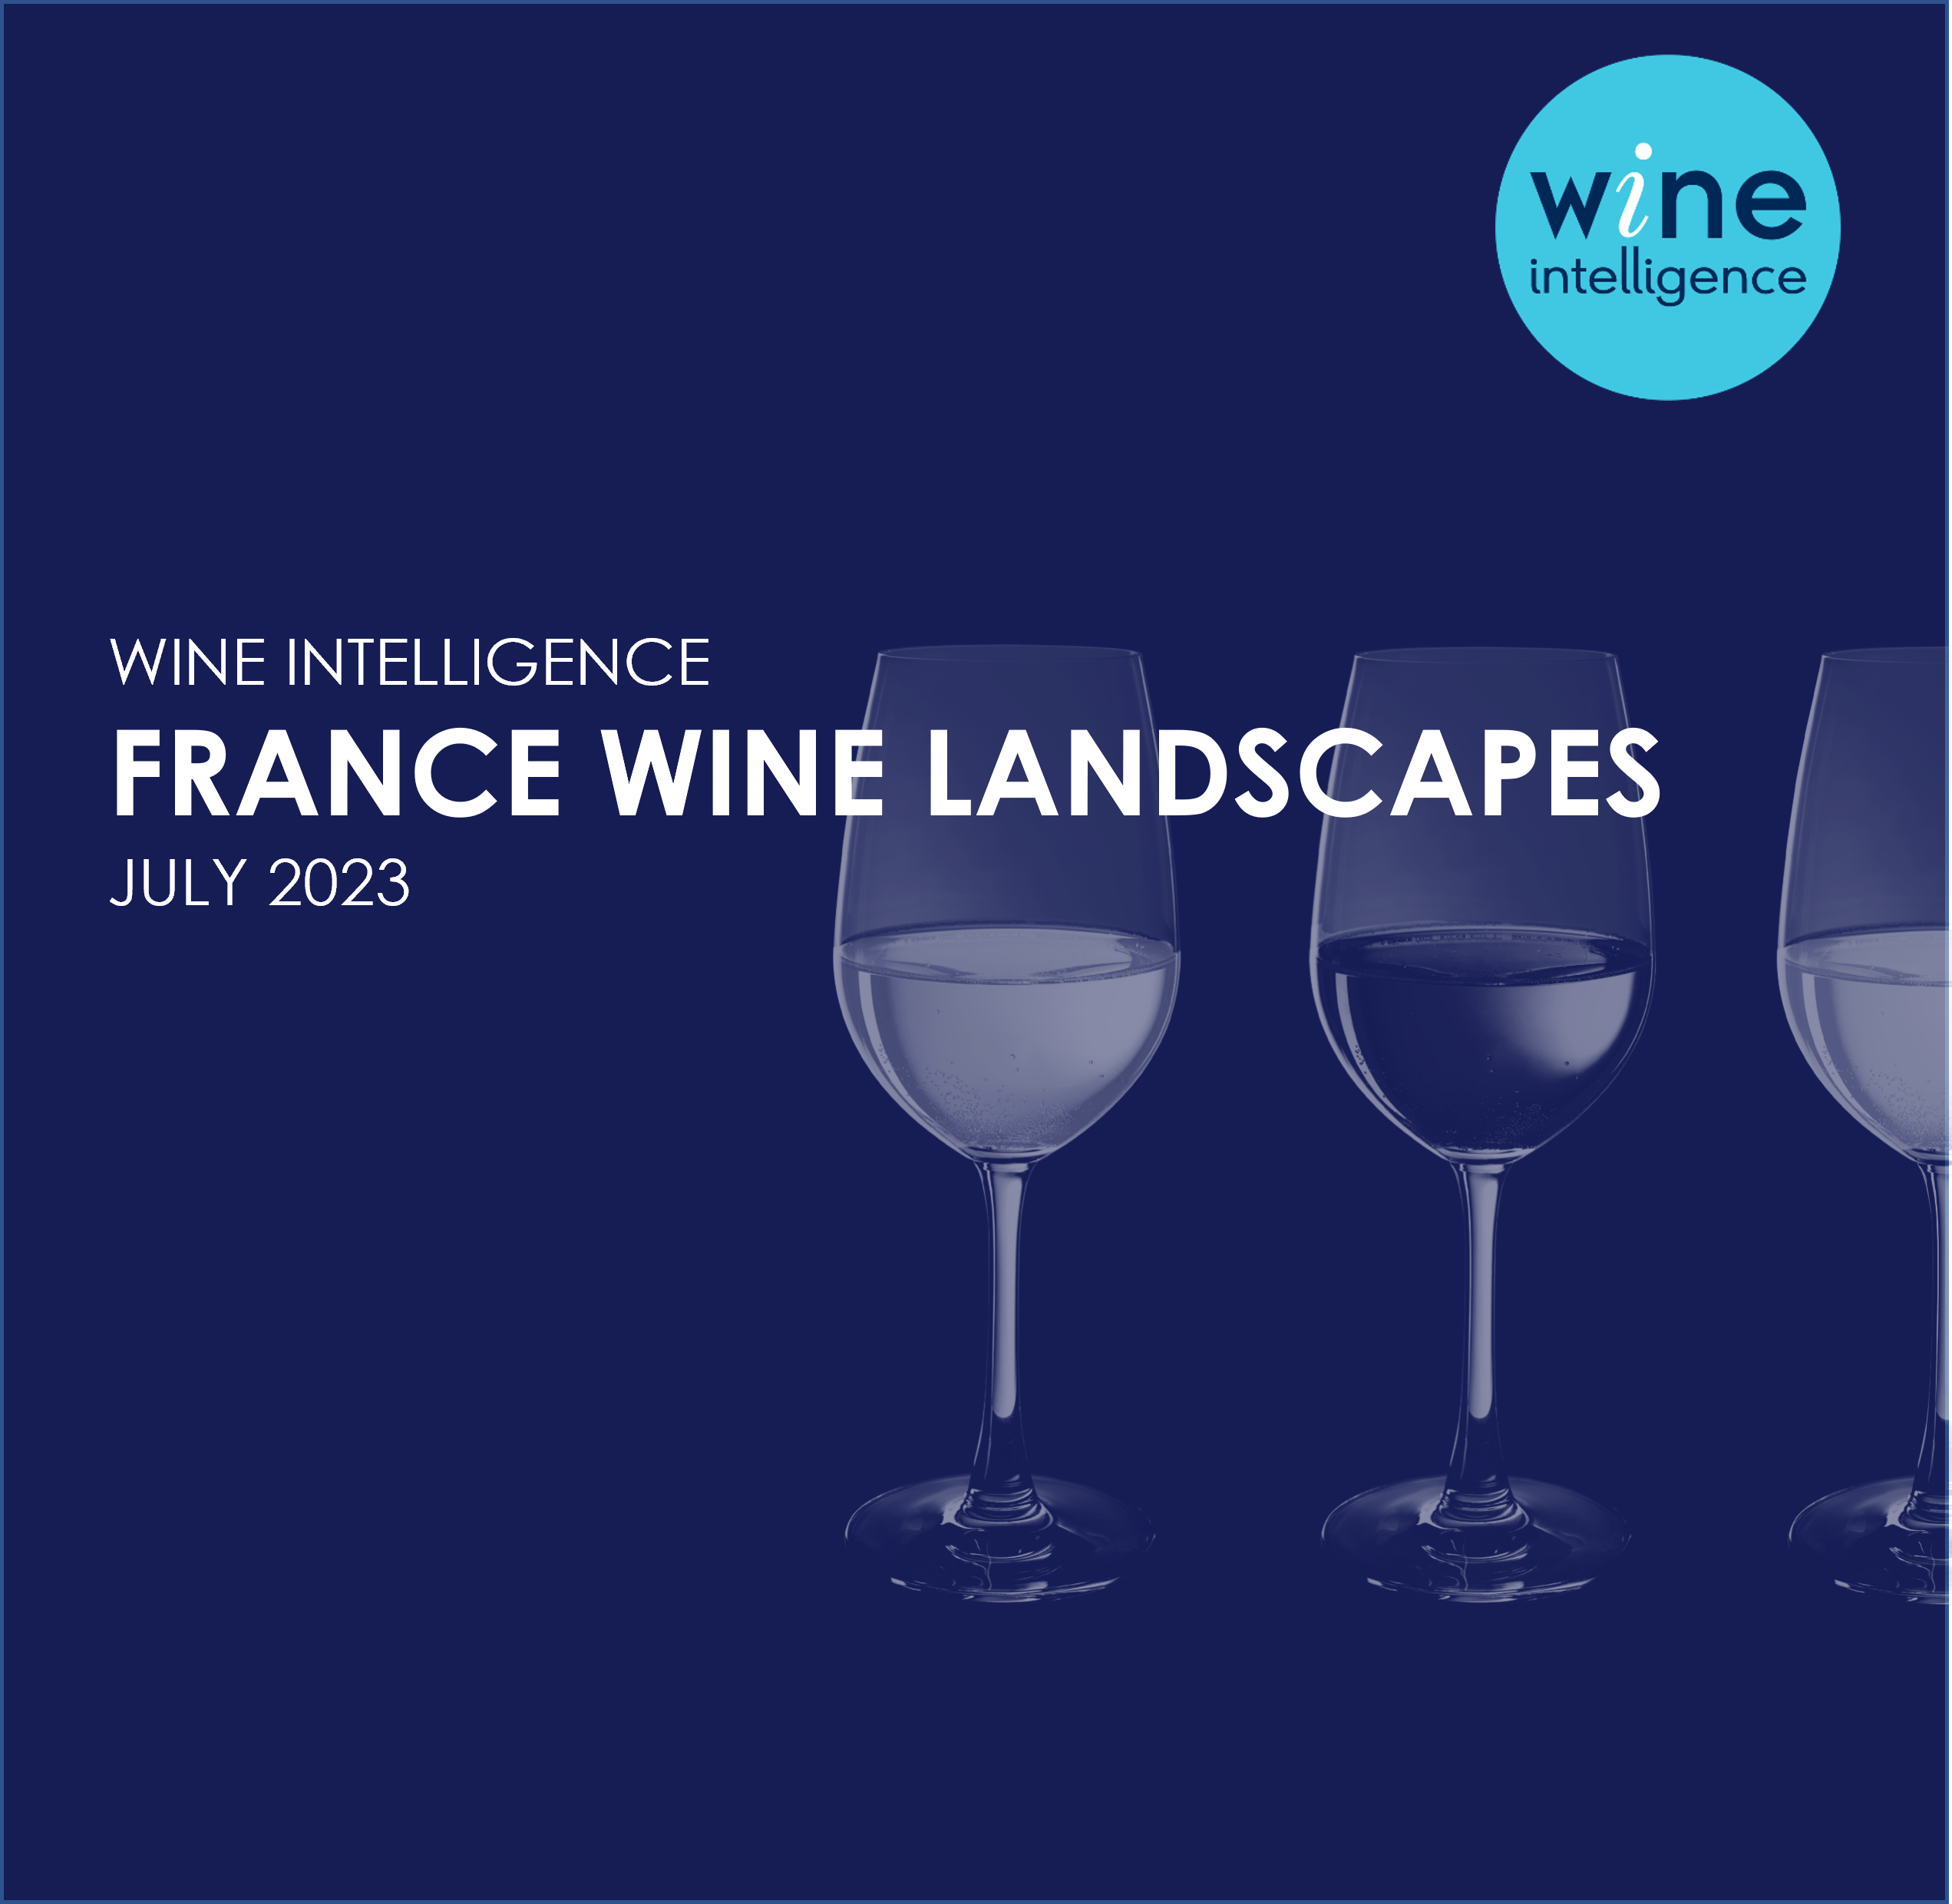 France Wine Landscapes 2023 - France Wine Landscapes Report 2023